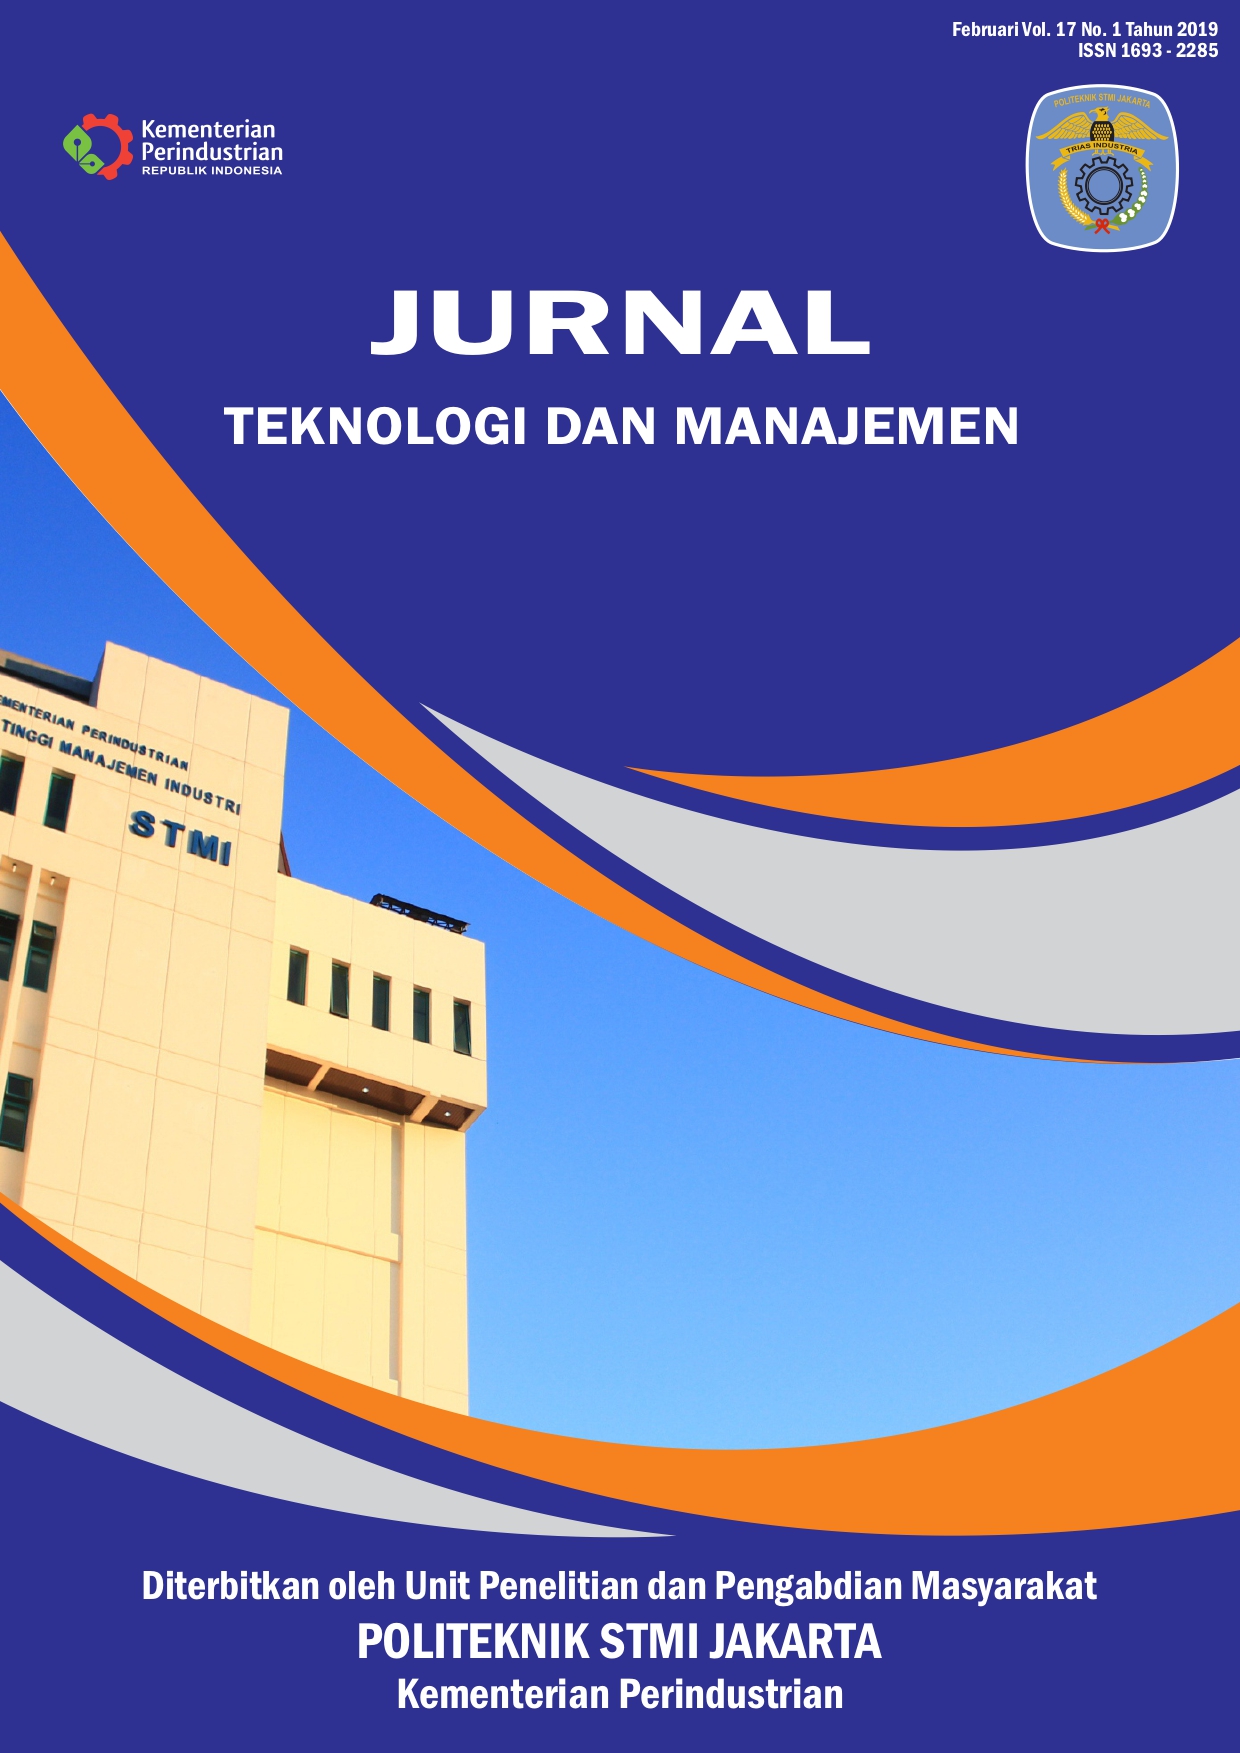 Jurnal Teknologi dan Manajemen Volume 17 No 1 Februari 2019